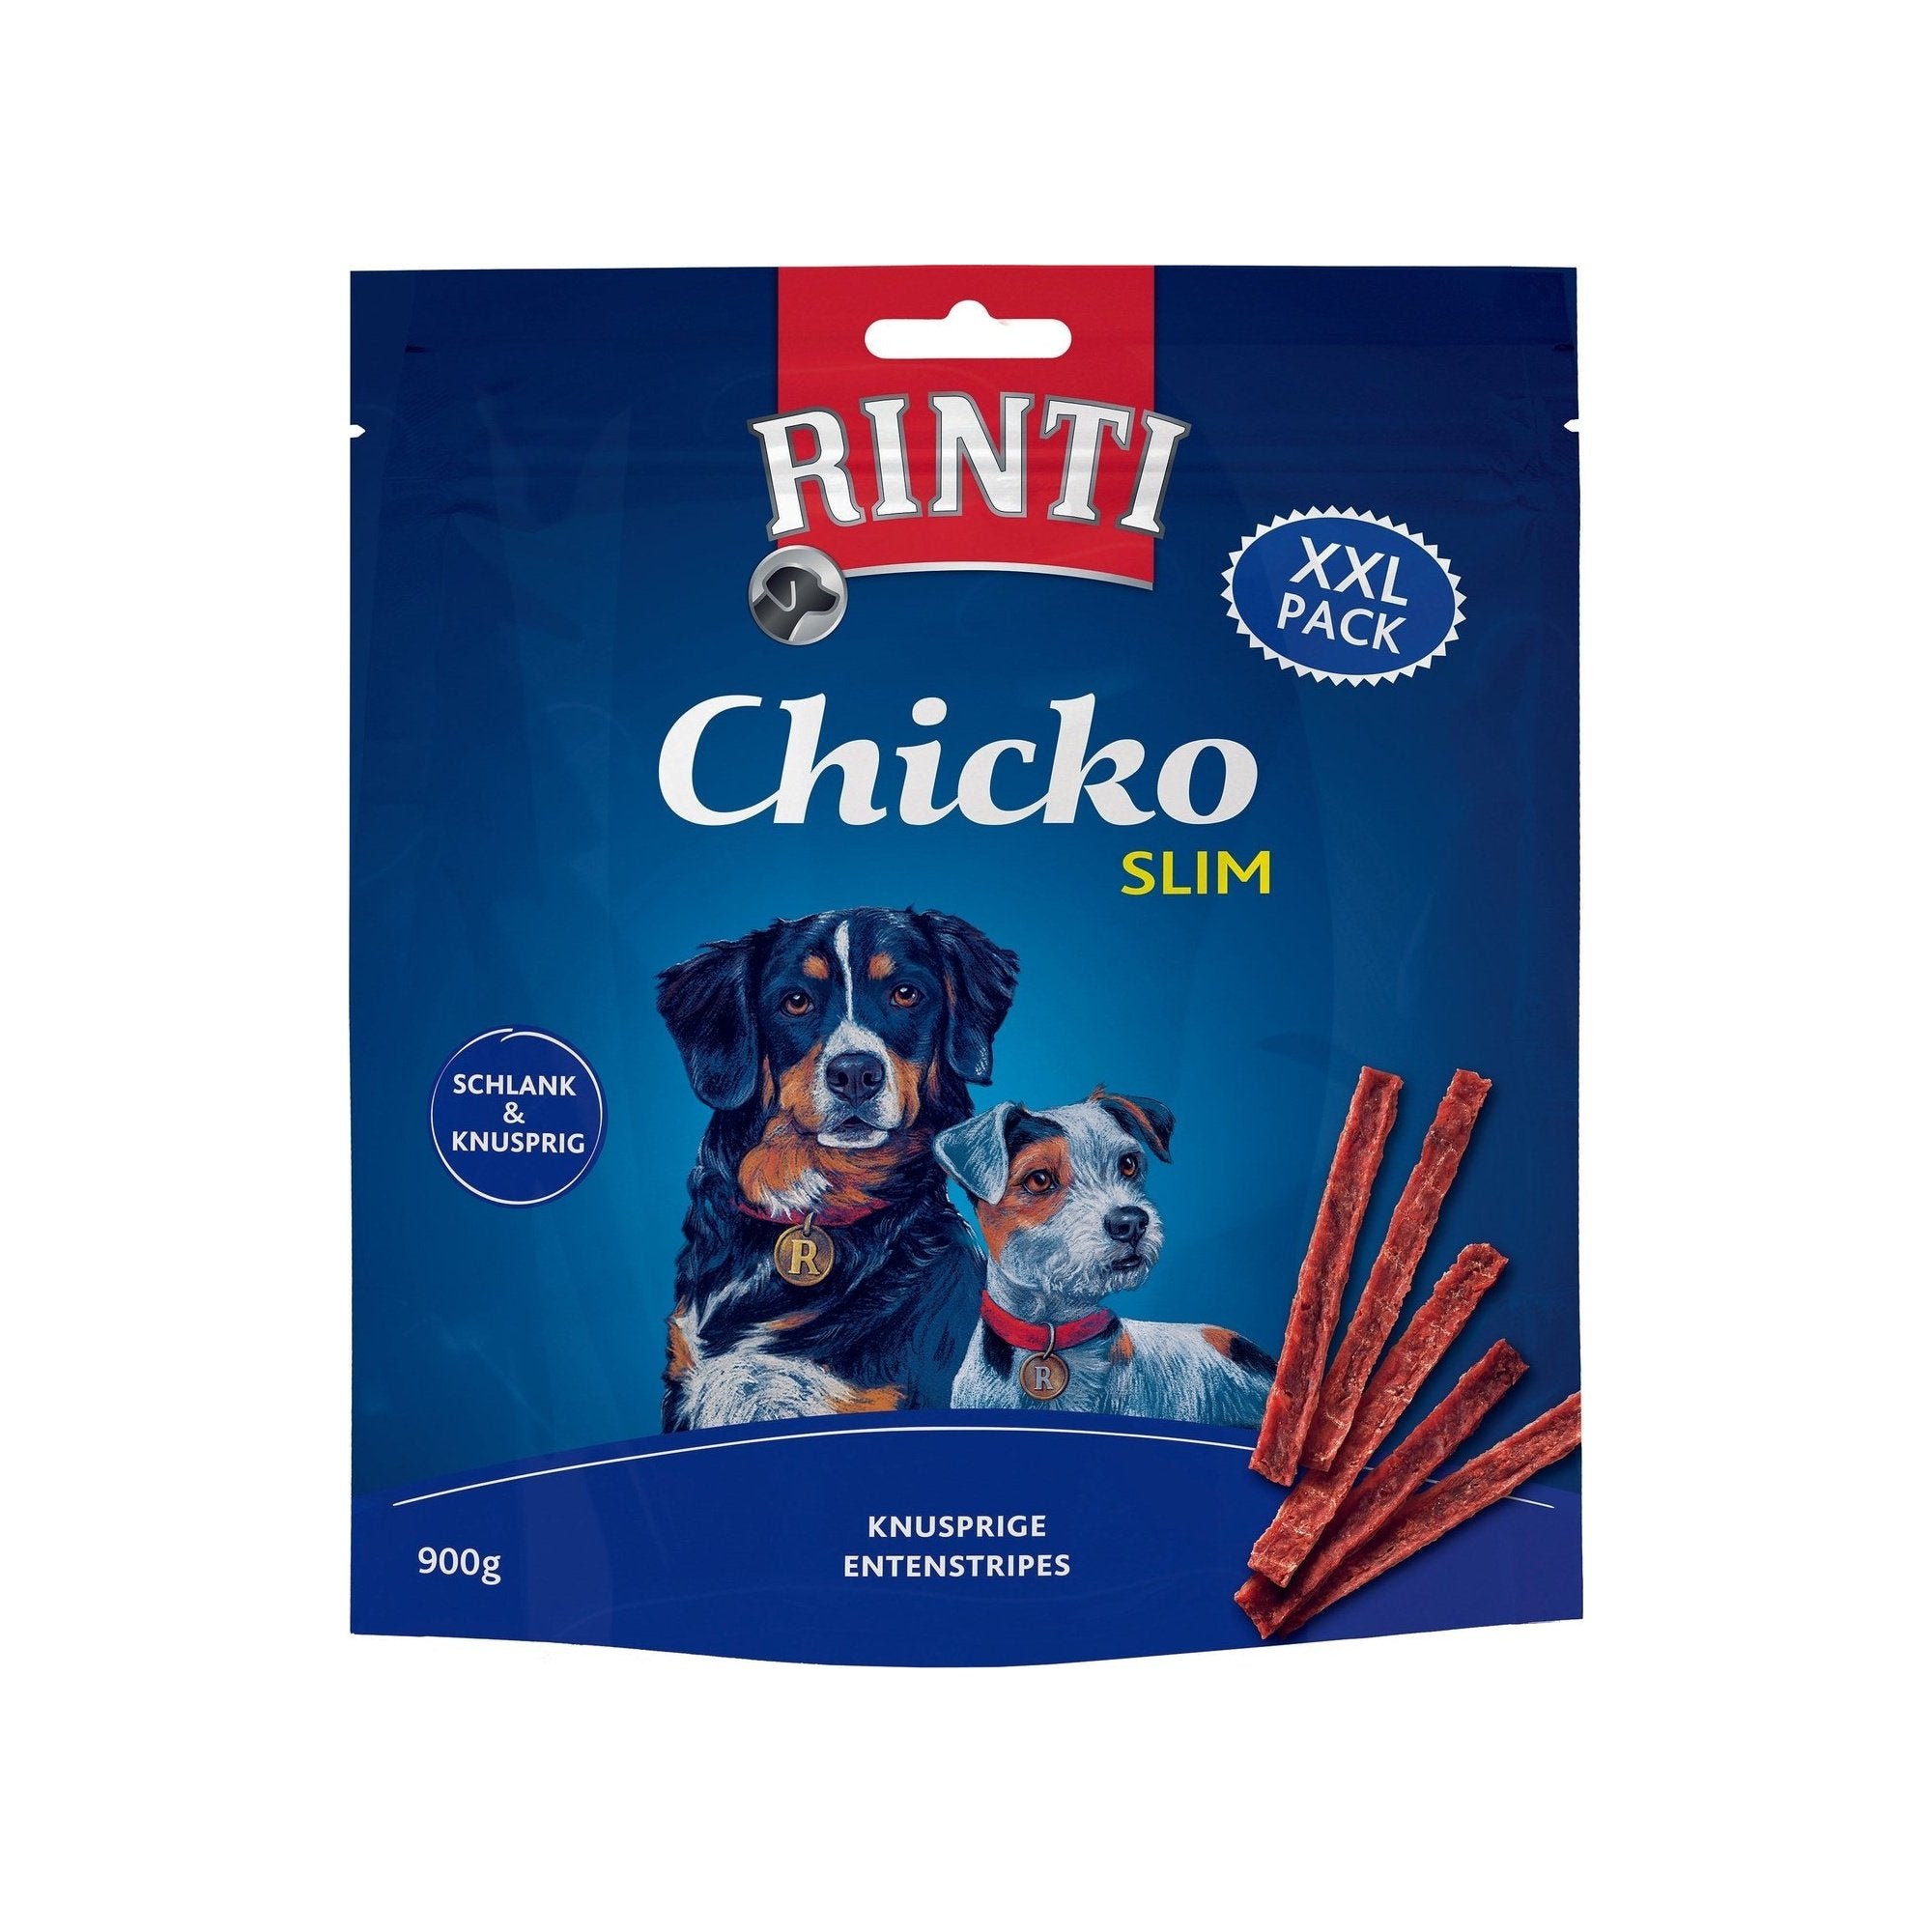 Artikel mit dem Namen Rinti Chicko Slim Ente Knusprige Entenstripes im Shop von zoo.de , dem Onlineshop für nachhaltiges Hundefutter und Katzenfutter.